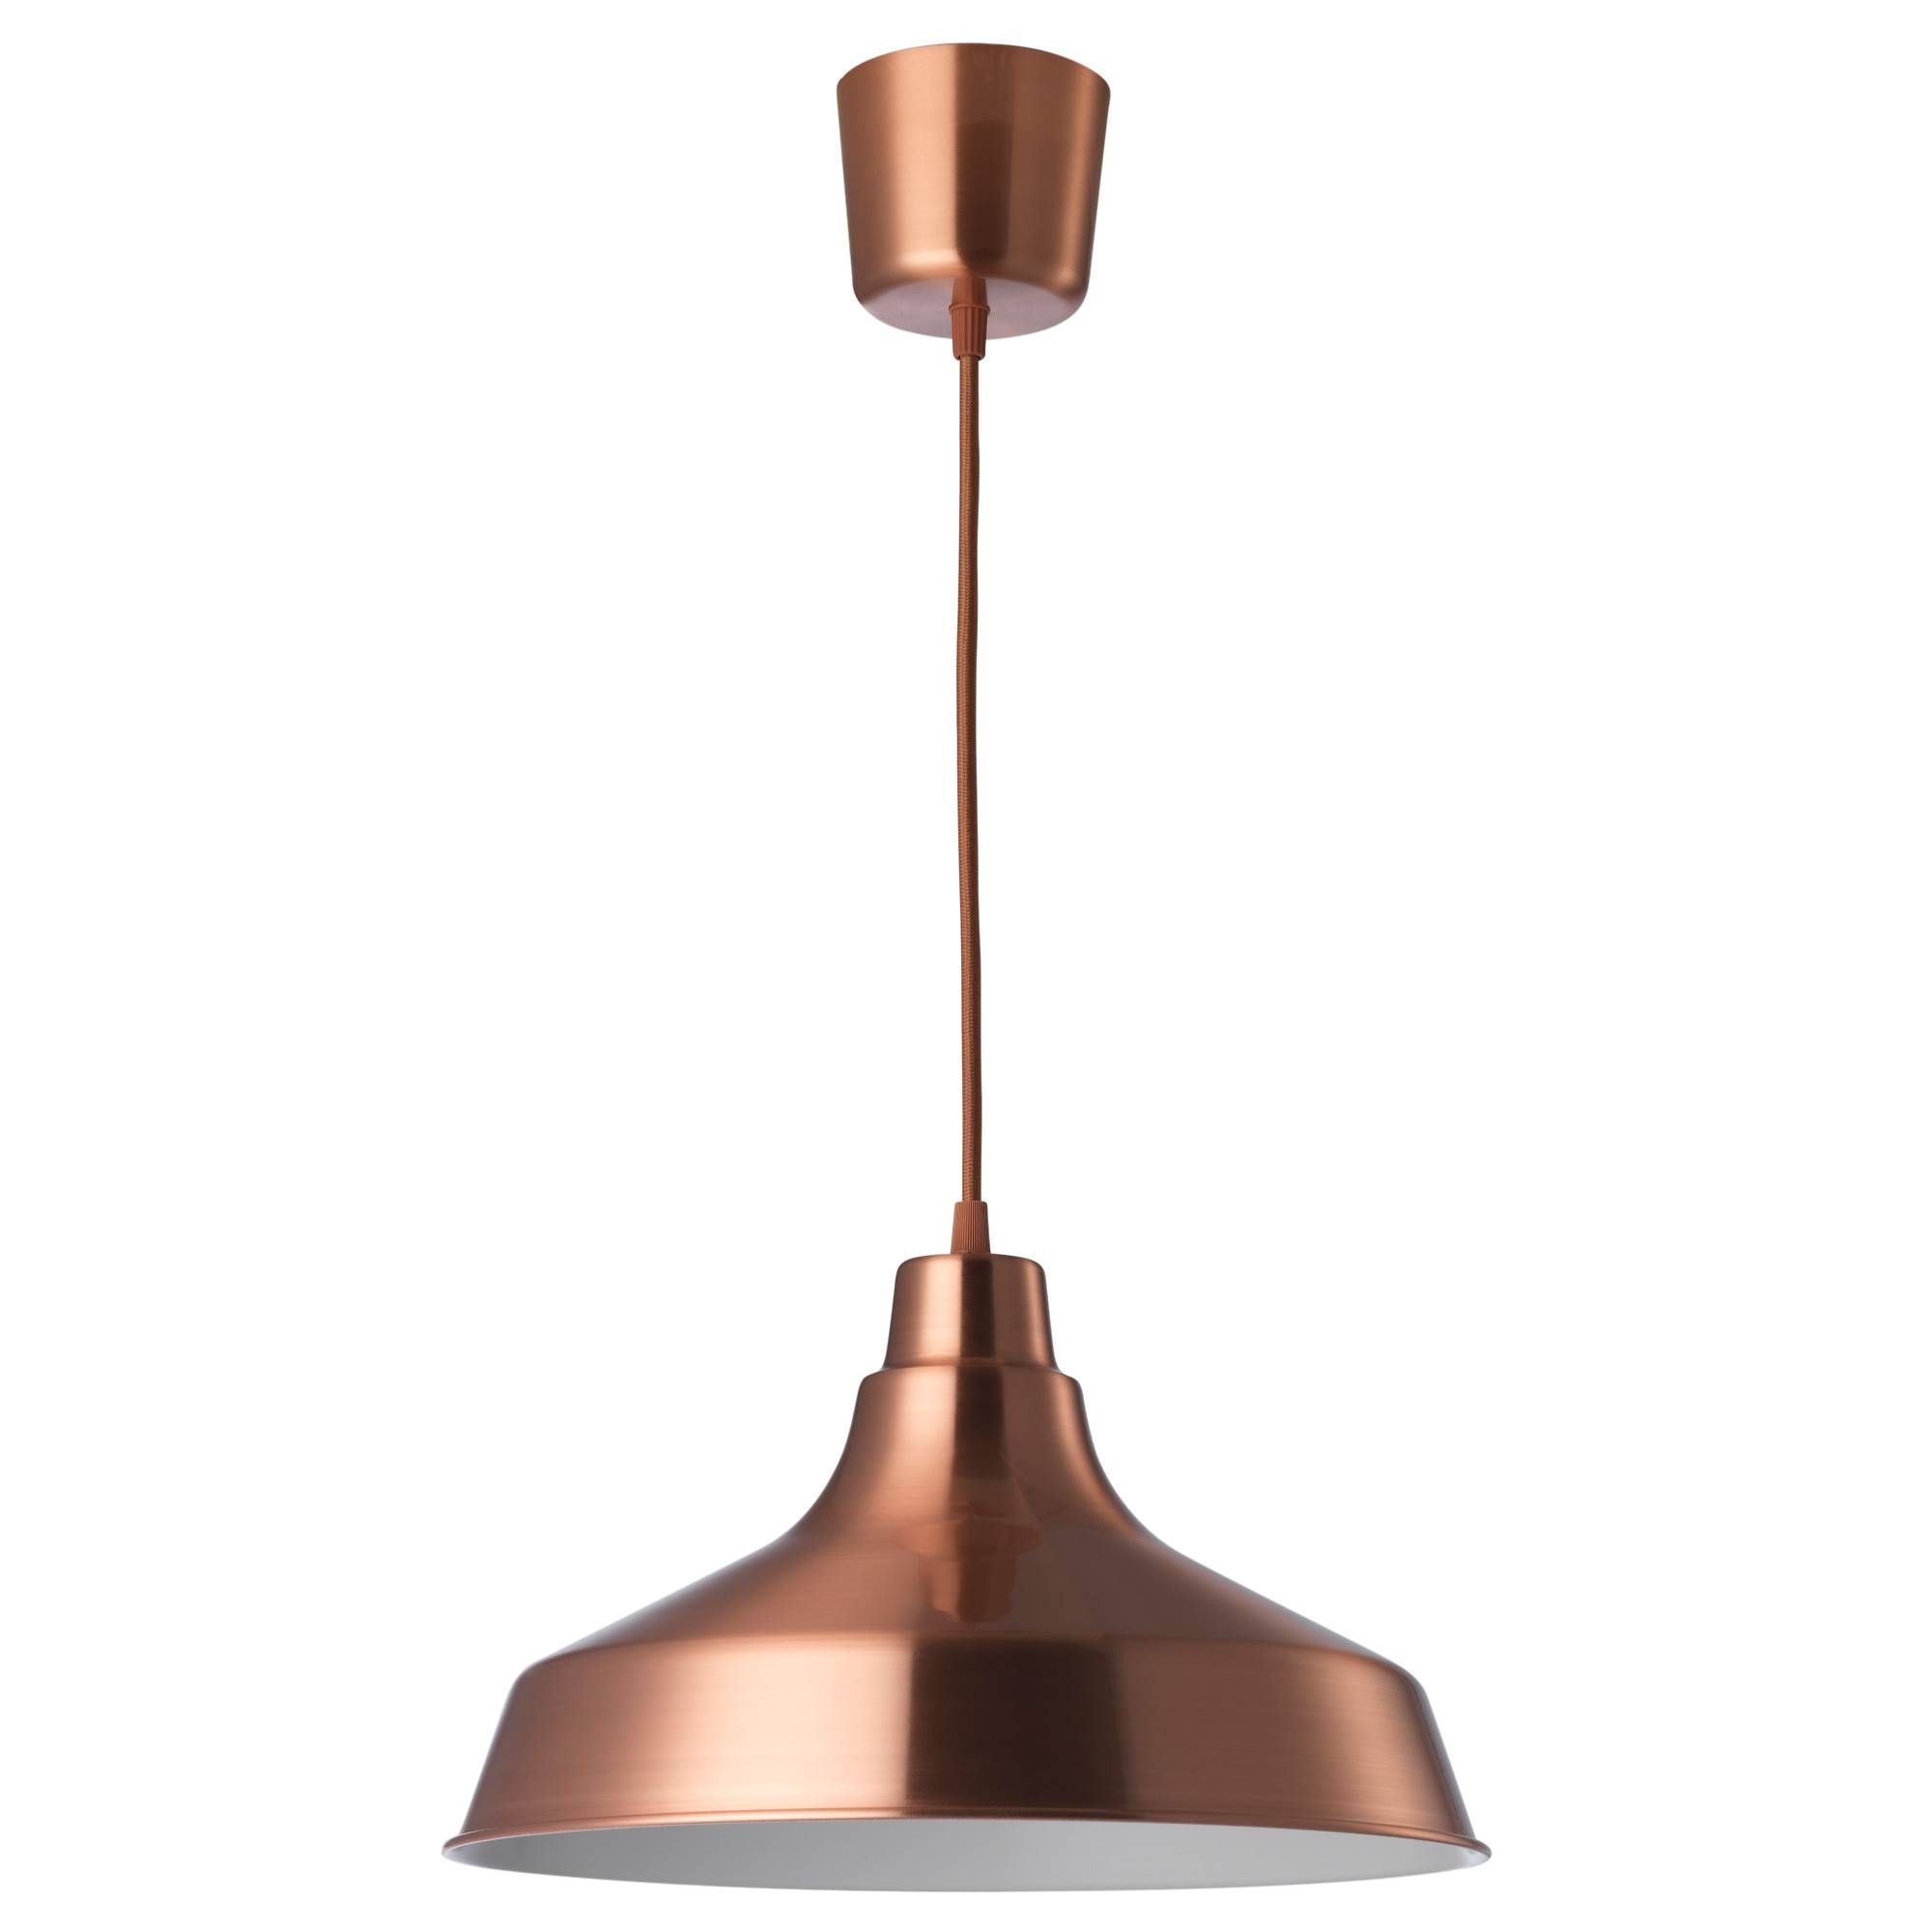 Vindkåre Pendant Lamp Copper Colour 36 Cm – Ikea Pertaining To Ikea Pendant Lights (View 9 of 15)